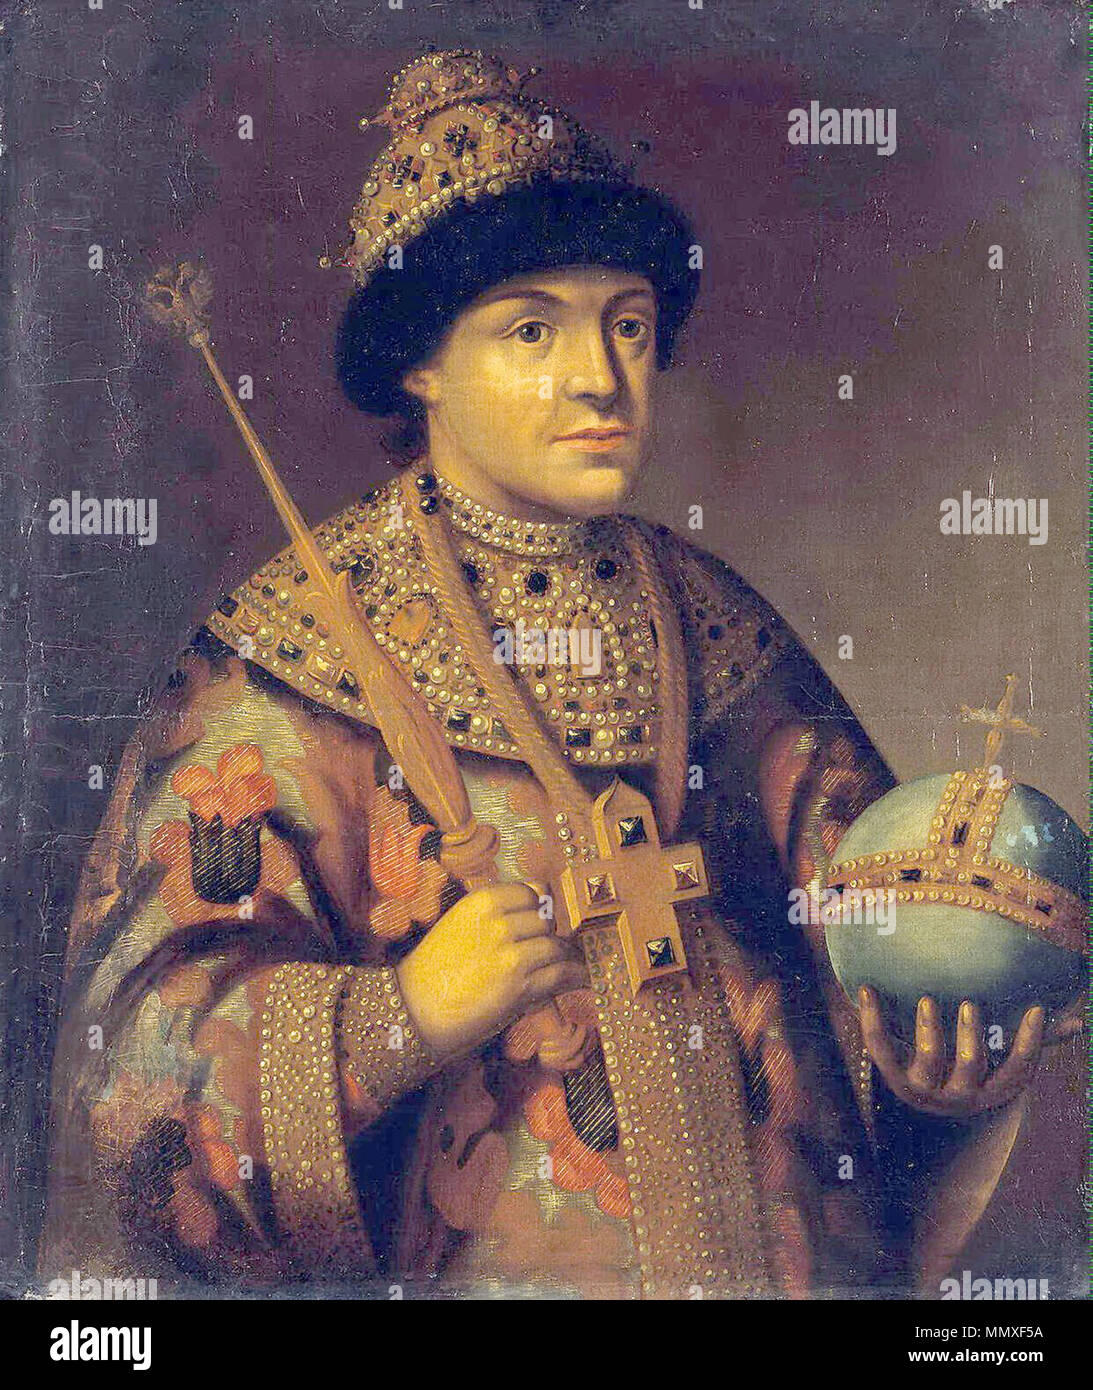 . Feodor (Theodore) III Alexeevich Russlands (Russisch: Алексеевич Фёдор III) (Juni 9, 1661 - Mai 7, 1682). Datum unbekannt. Feodor III von Russland Stockfoto